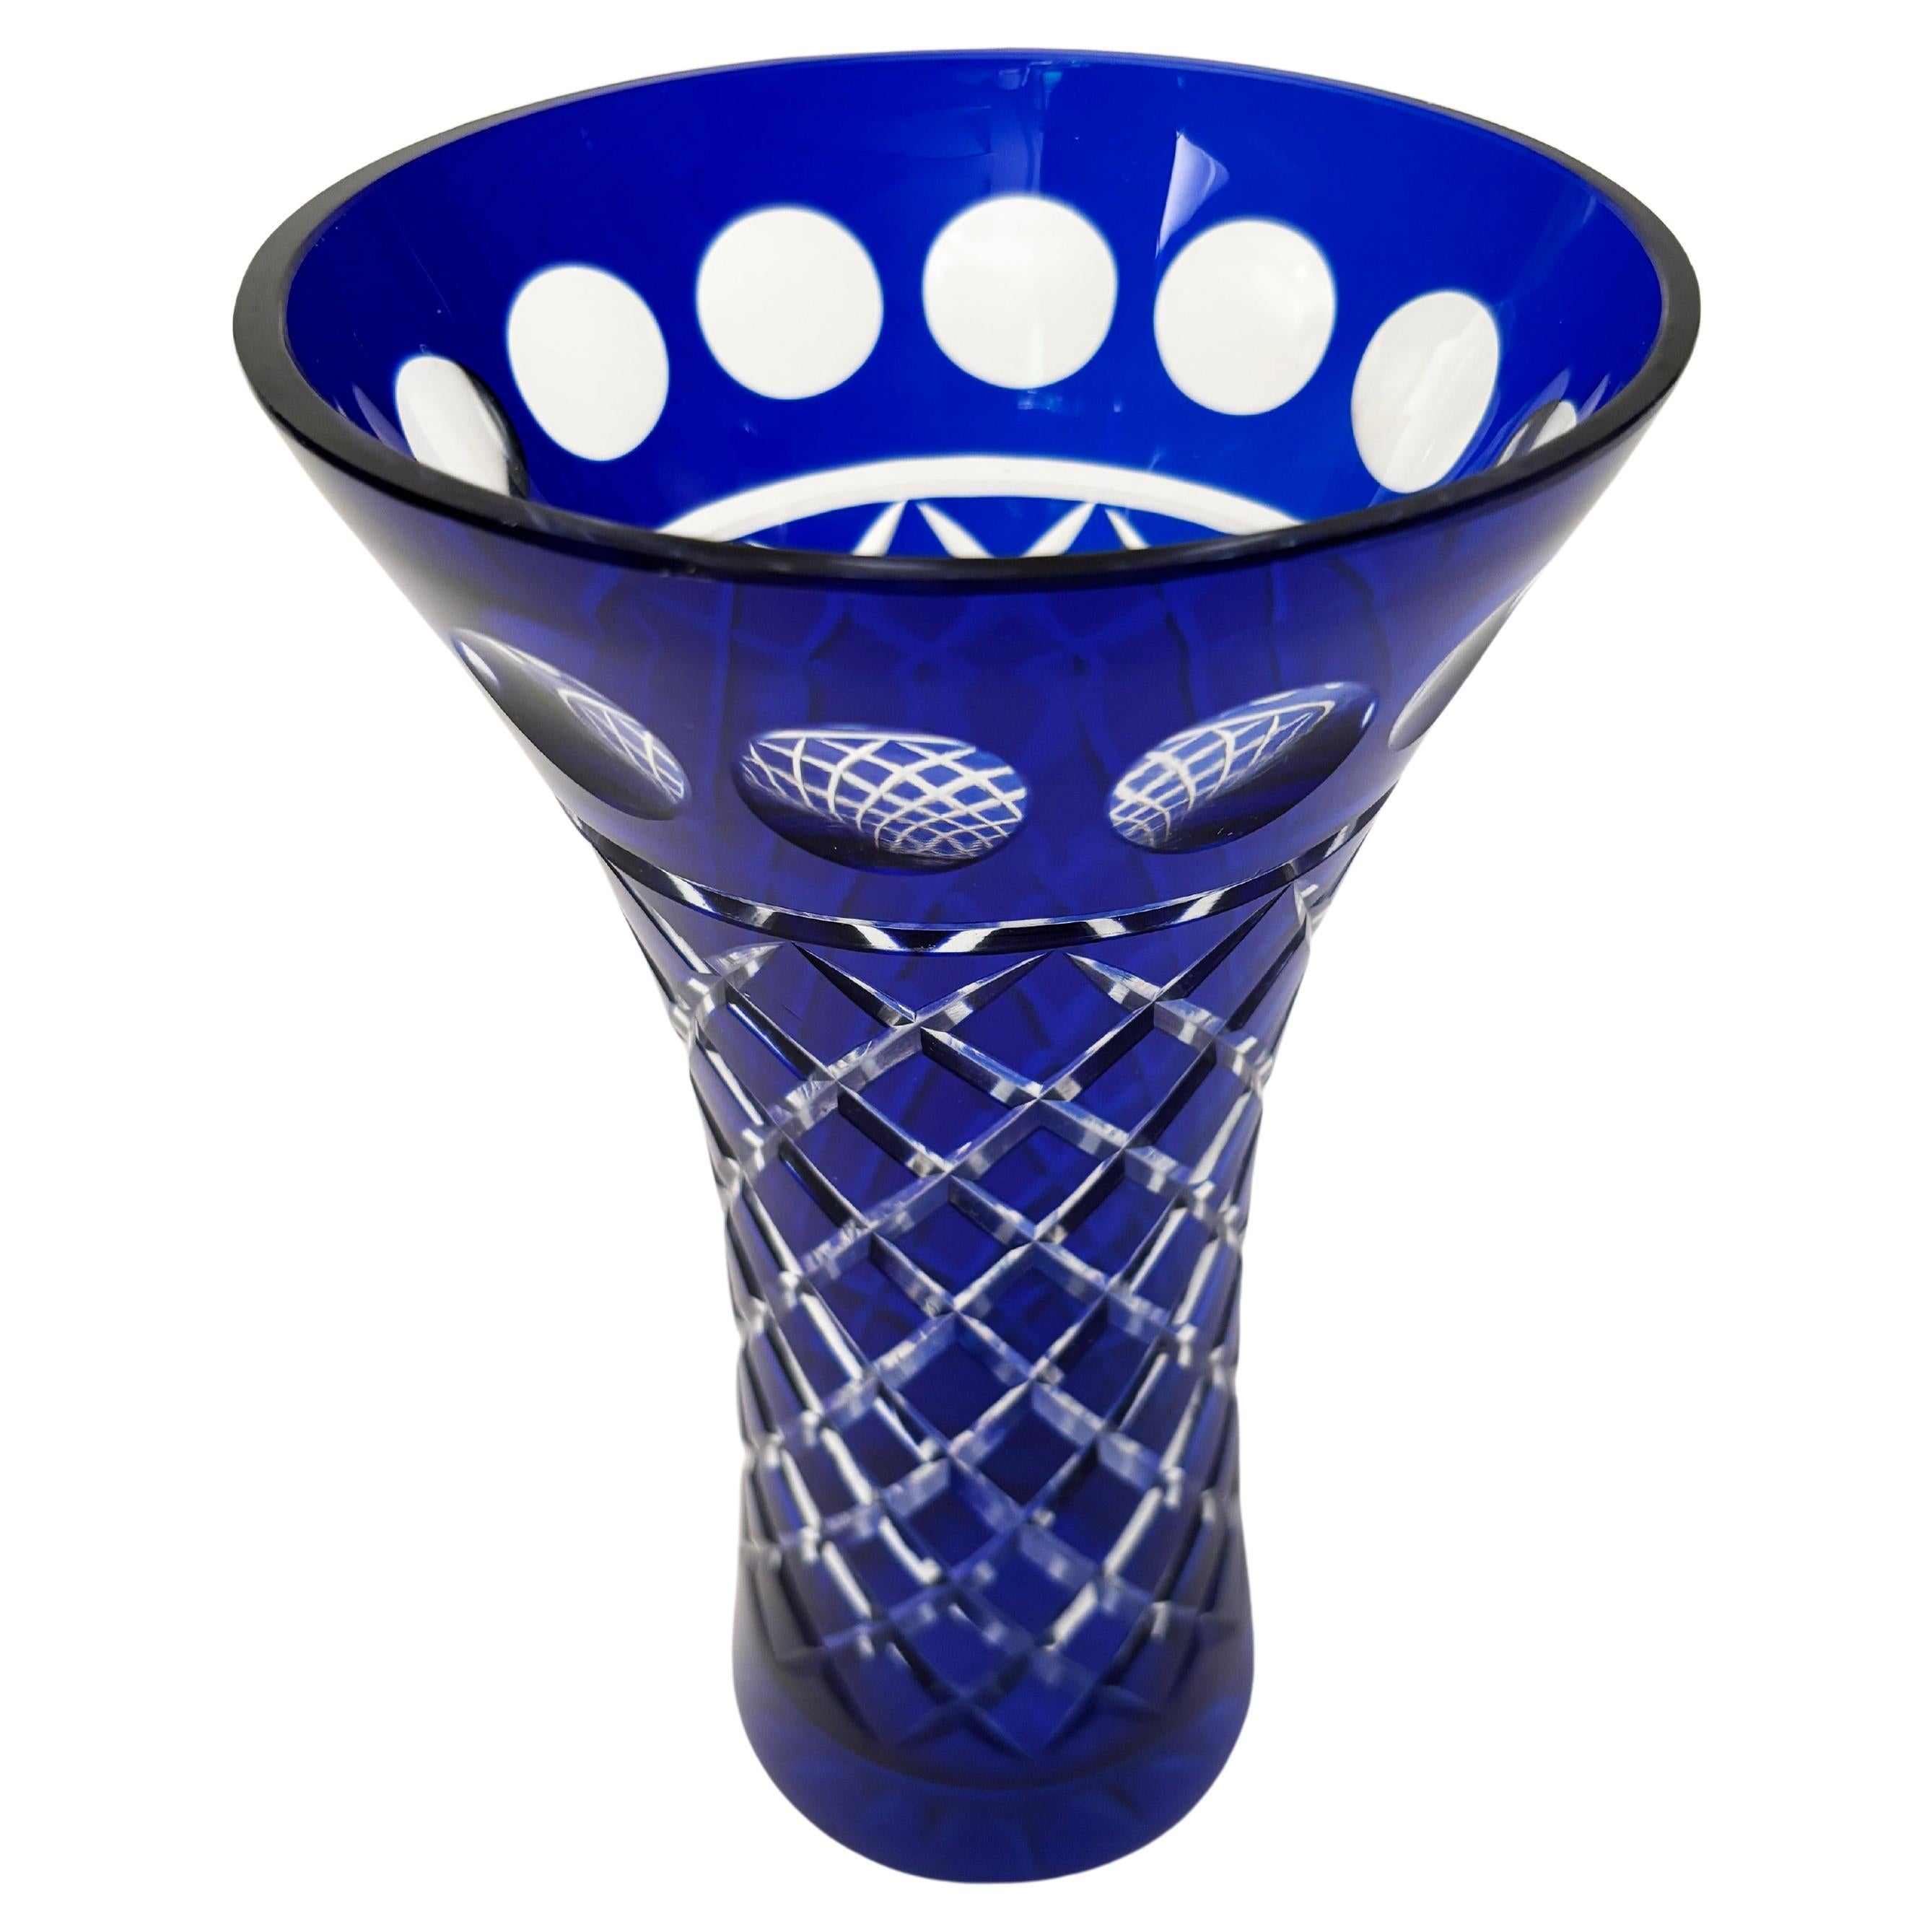 Diese atemberaubende Vase in kobaltblauem Kristall von Moser Bohemian wird mit einem kobaltblauen Glasschliff hergestellt, der spektakuläre Effekte erzeugt. Die kreisförmigen Muster, gepaart mit dem diamantgeschliffenen Korpus, auf einer wunderschön